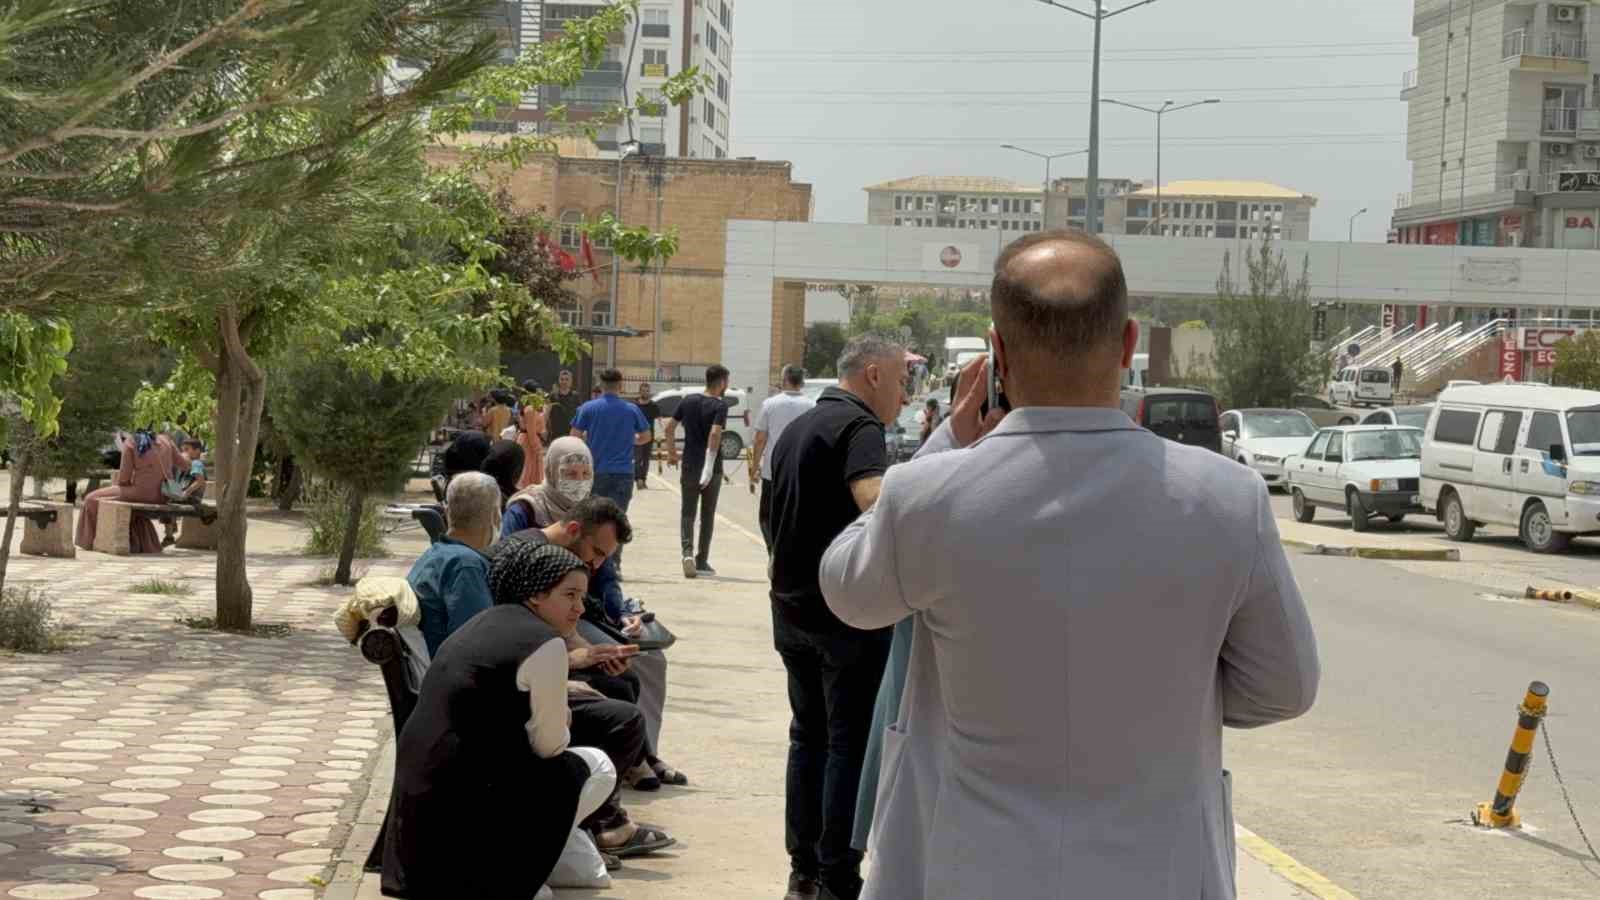 Göğüs hastalıkları uzmanı Mardin’deki toz taşınımına karşı uyardı
